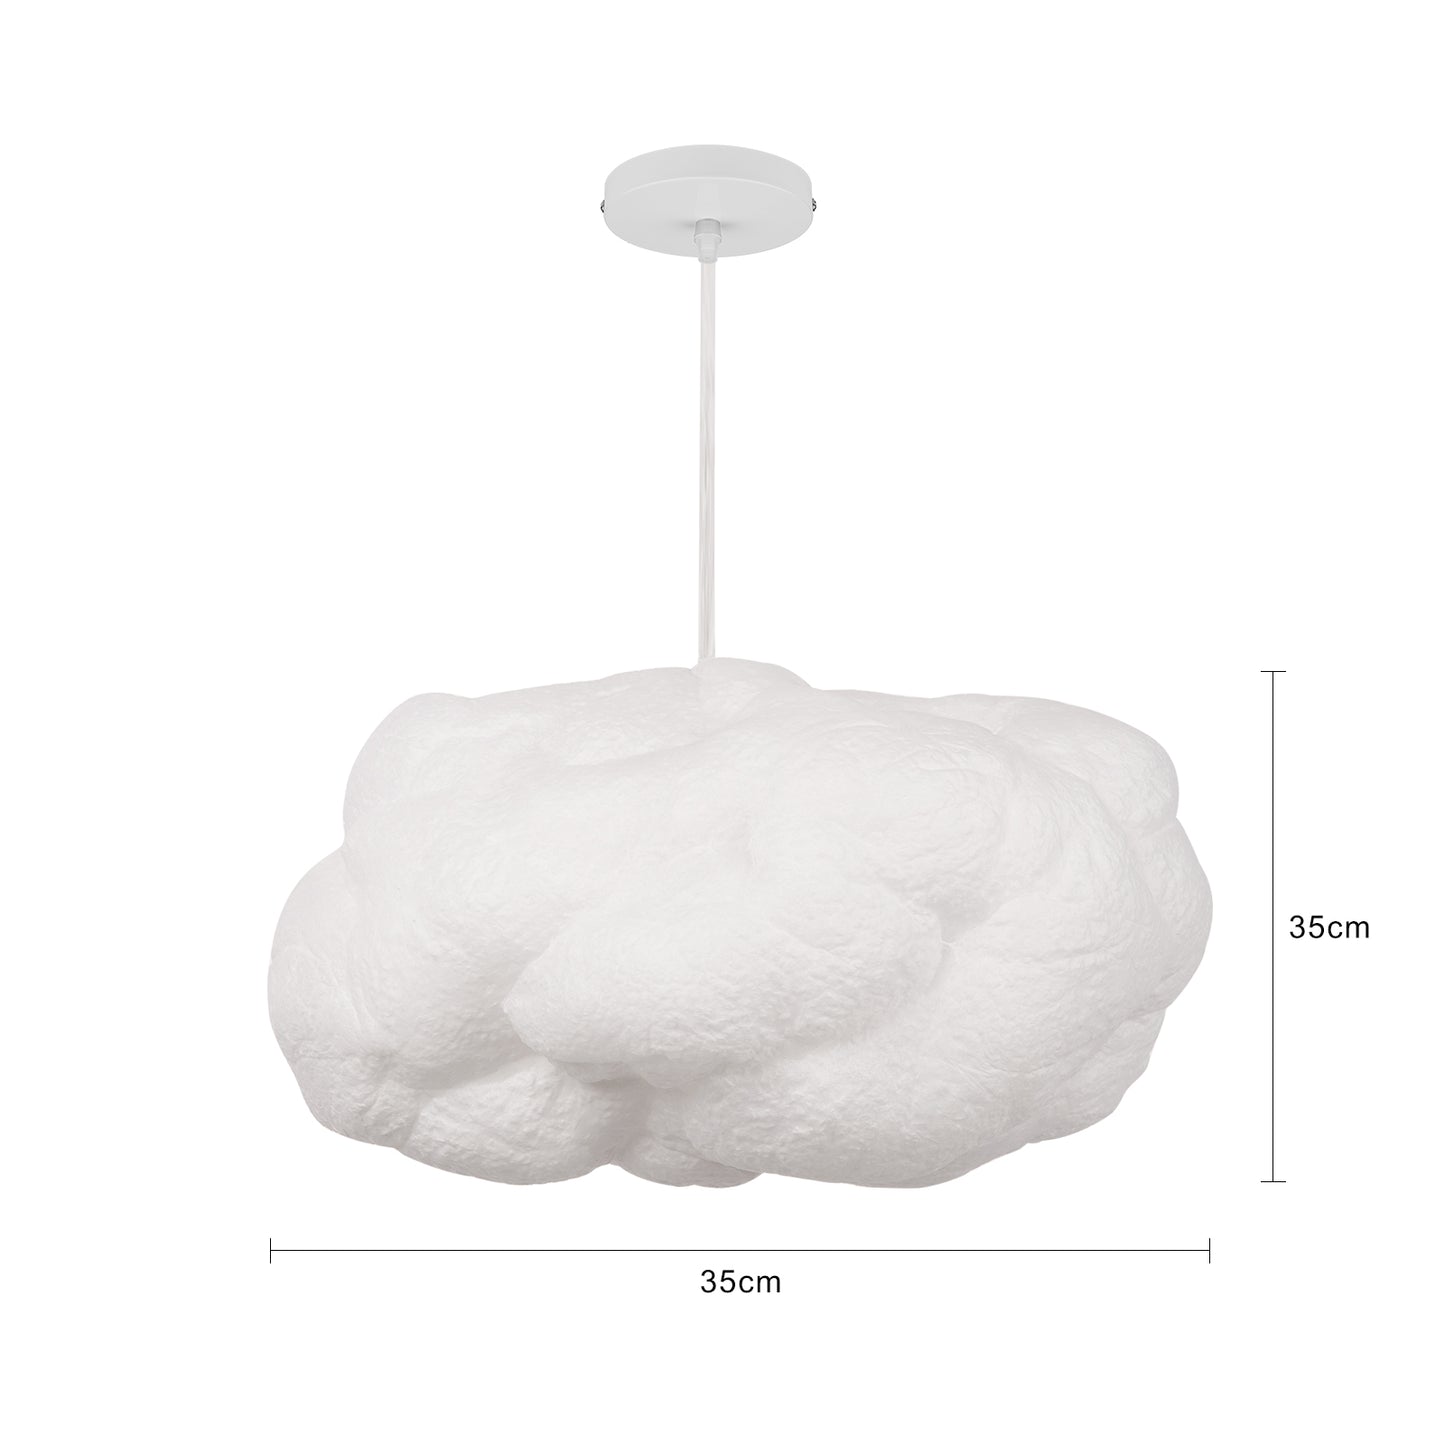 (M)White Cloud Pendant Lighting for Kids Room/Children's room/Nursery School